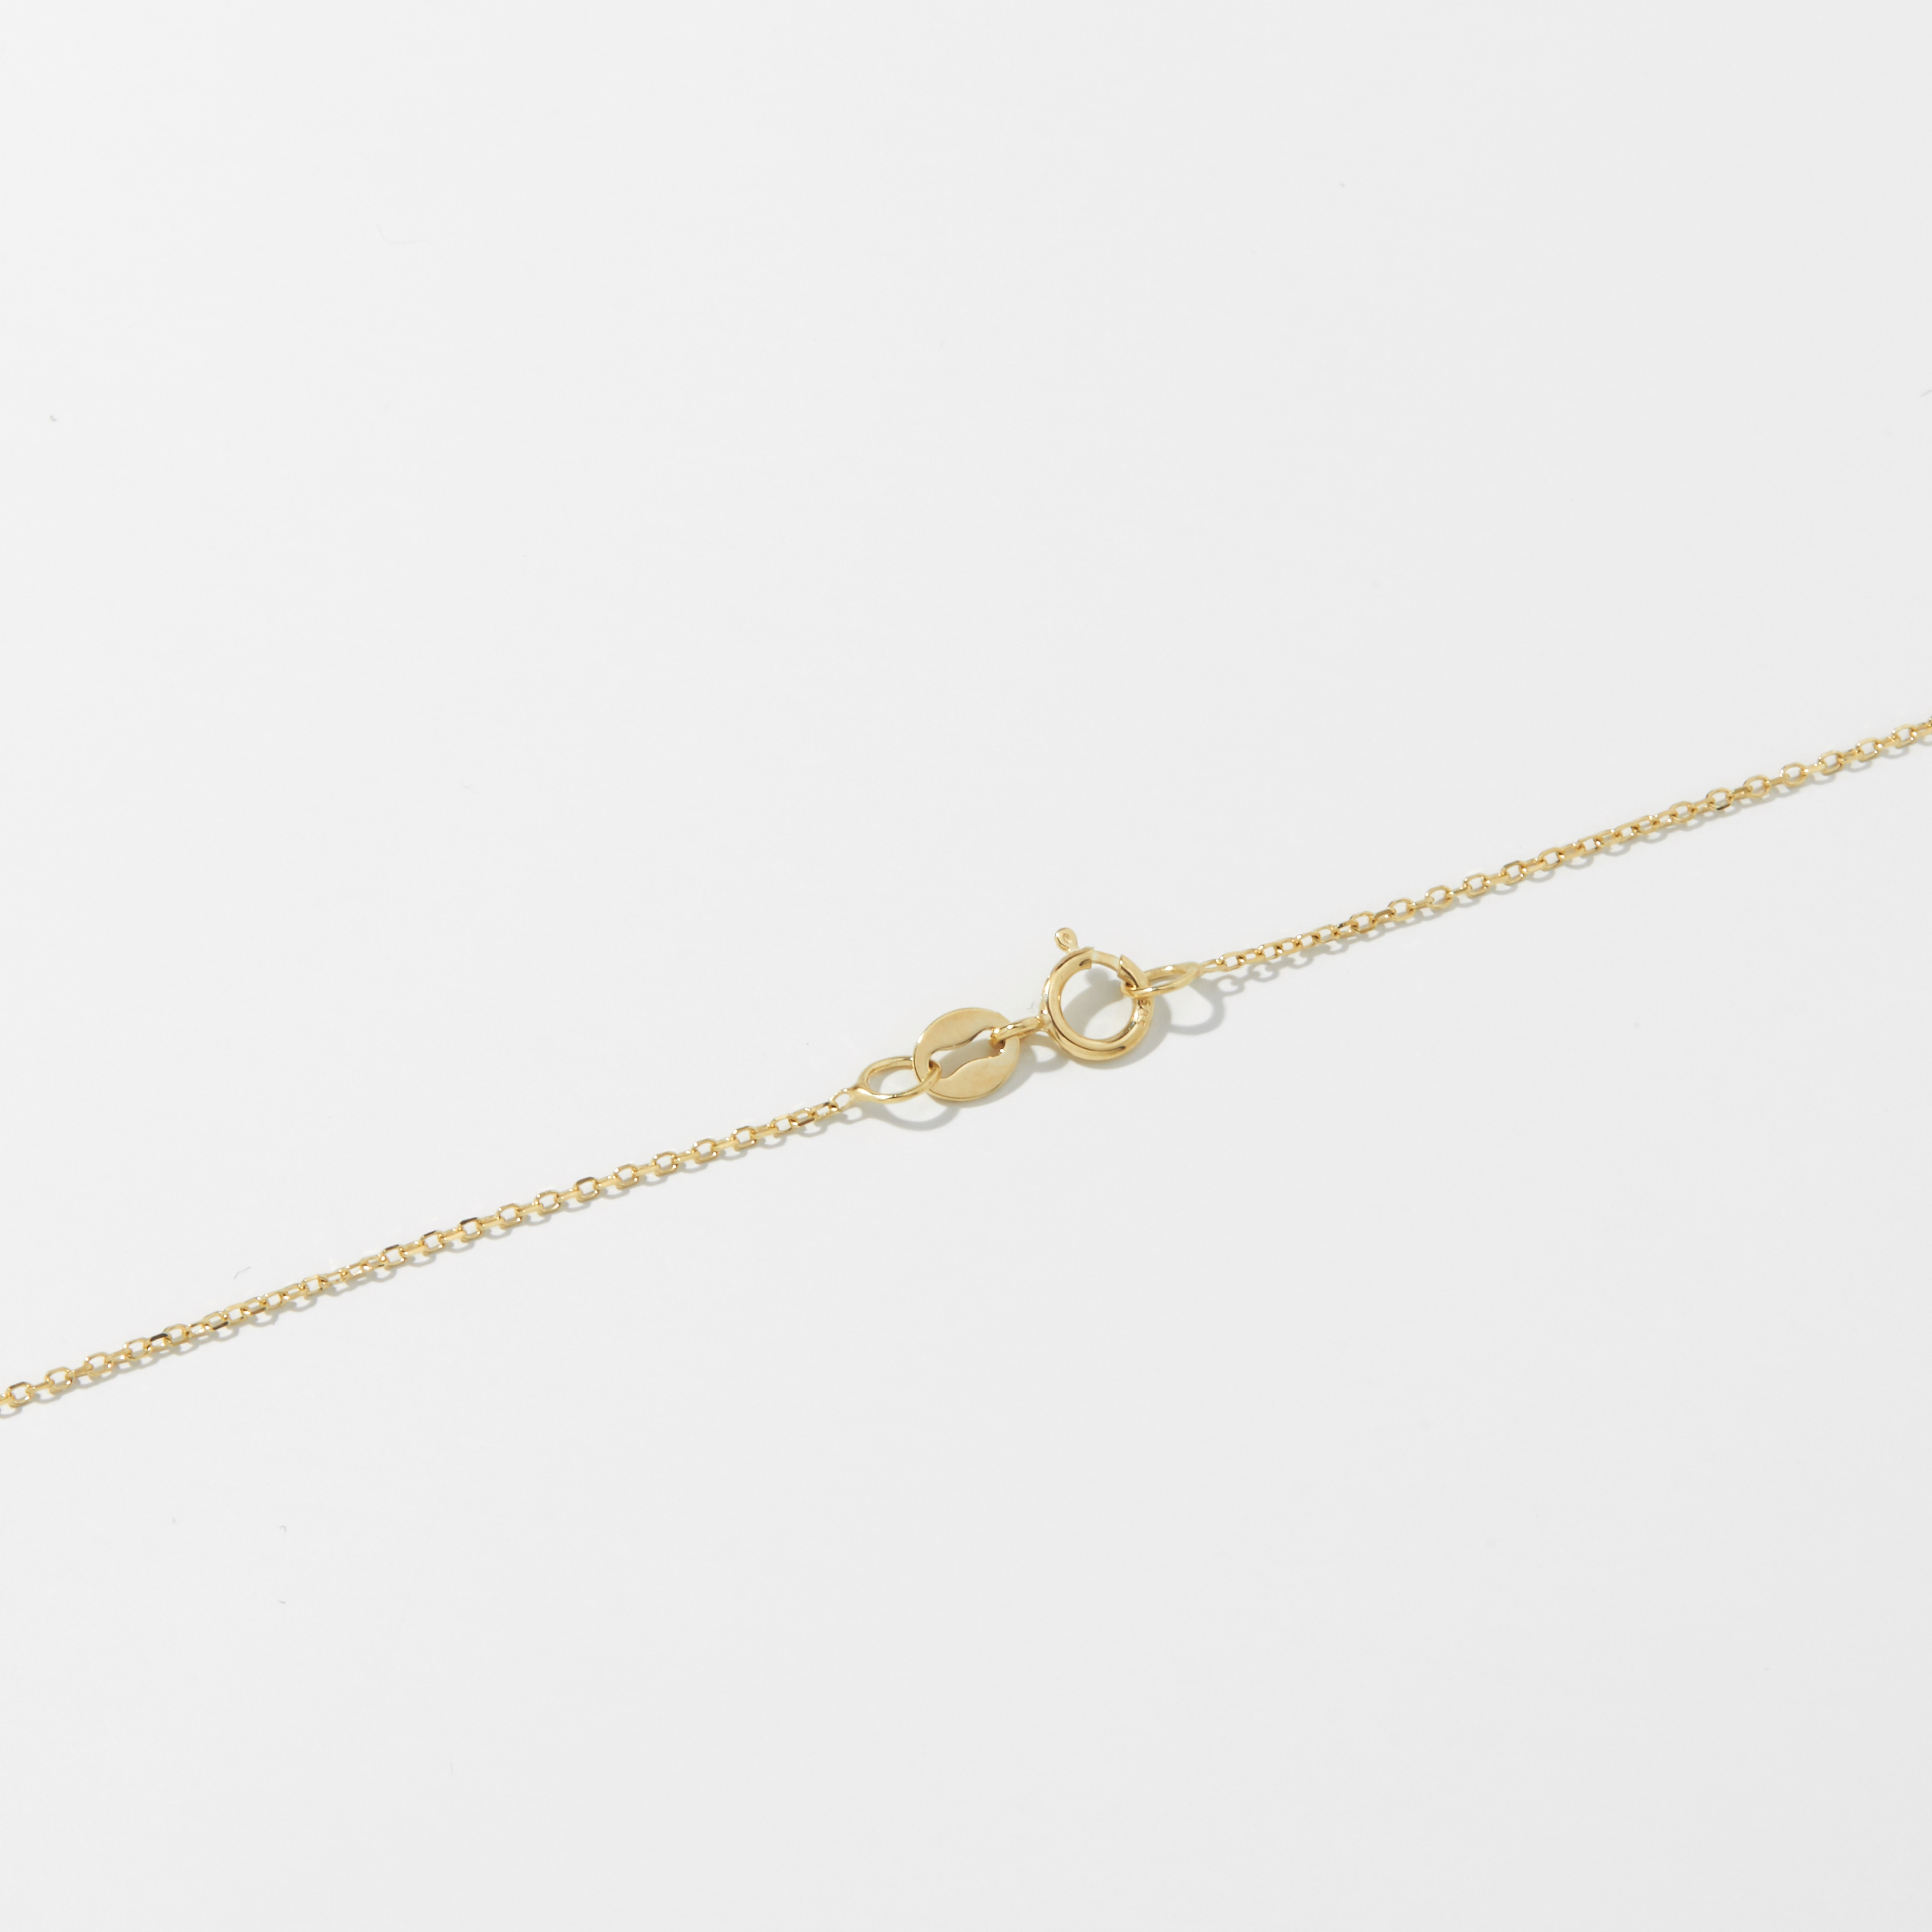 Jewellery - Necklaces & Pendants - Pendant Necklaces - 14K Gold